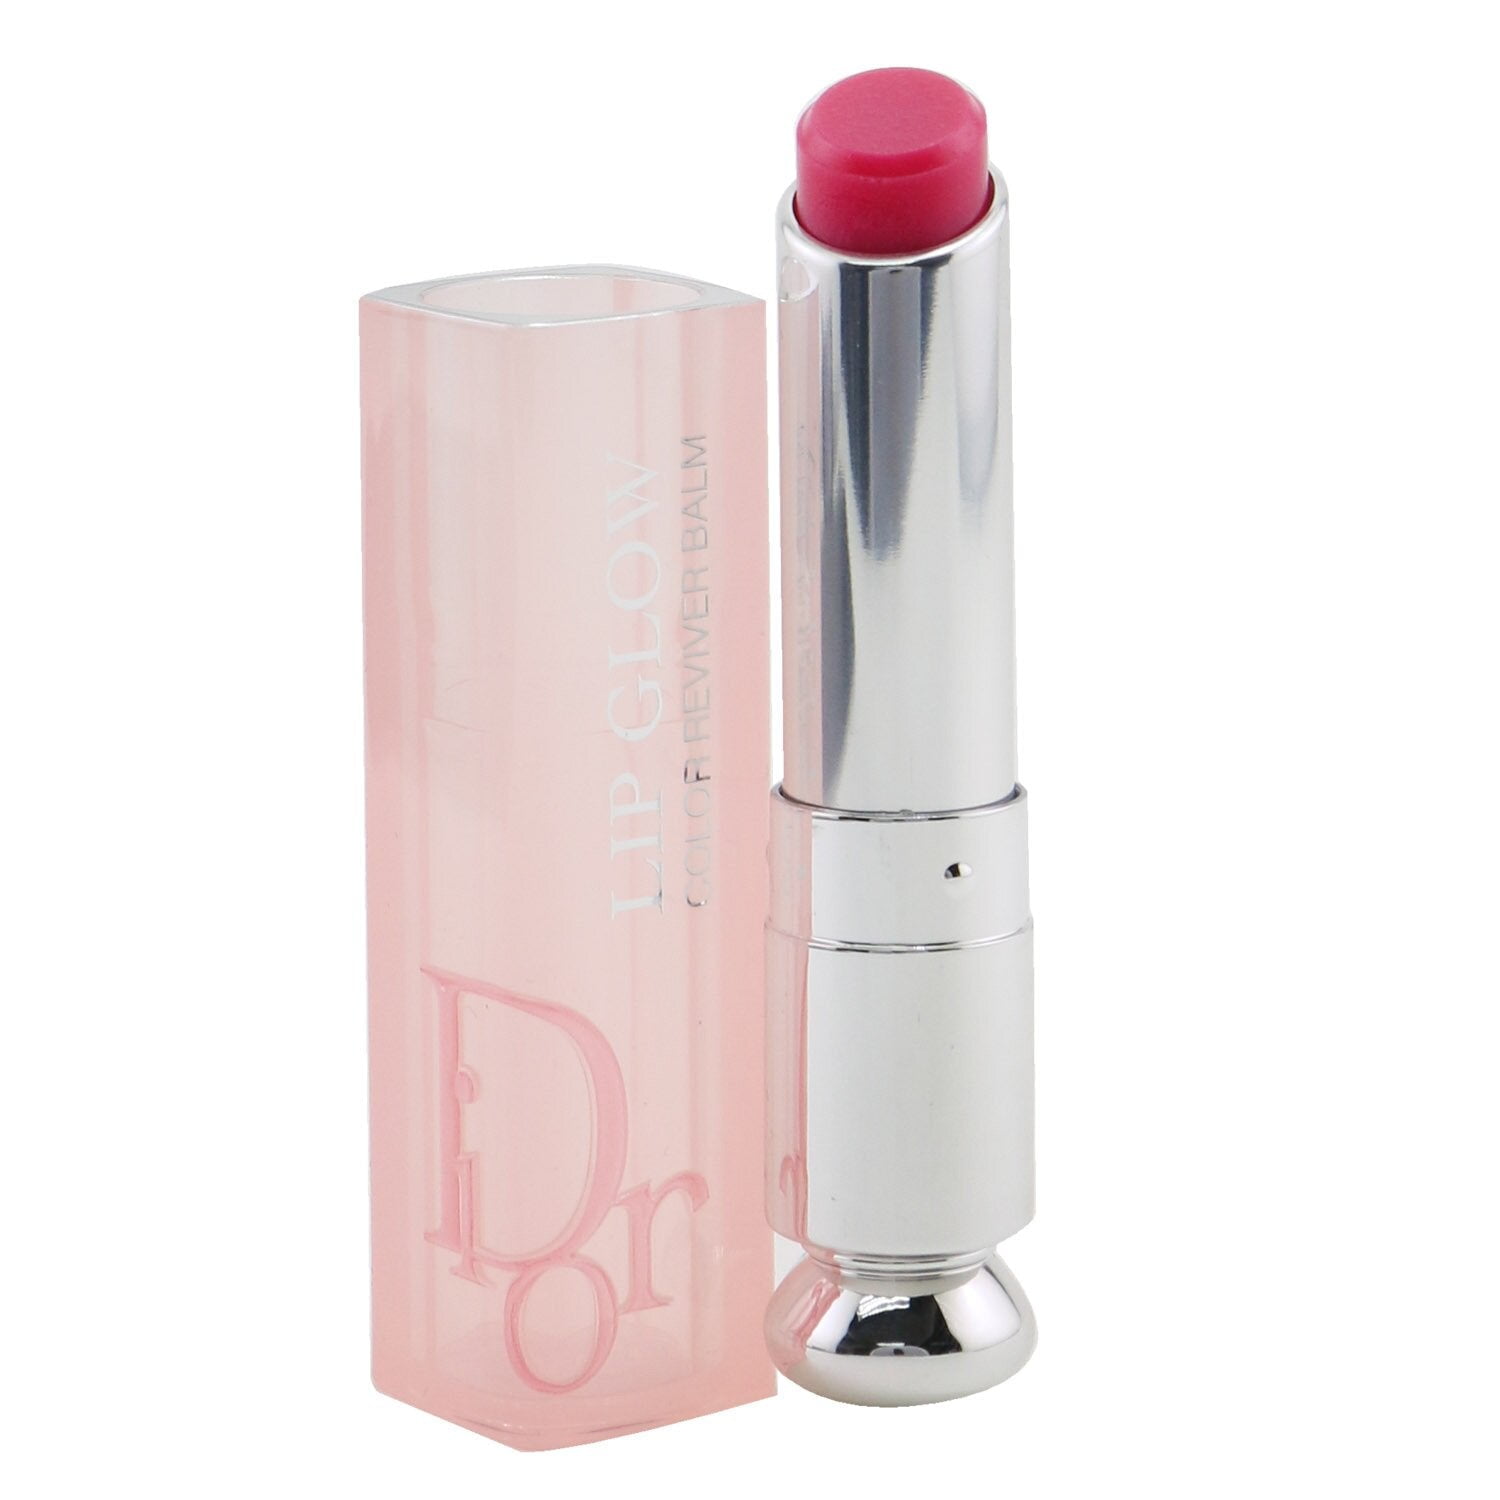 0.11oz Lip Balm Dior Lipstick-004 Coral, Addict Glow 3.2g/